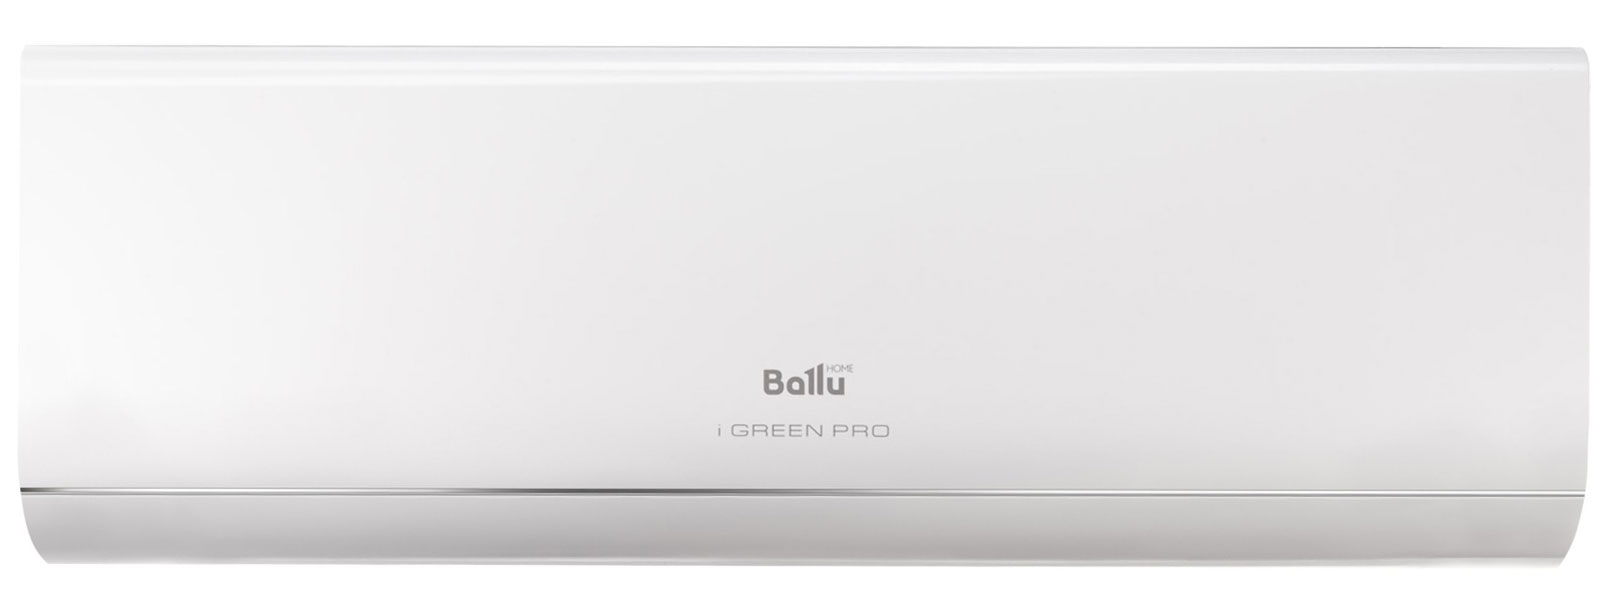 Сплит-система Ballu iGreen Pro BSAG-09HN8 комплект настенный кондиционер ballu bsag 09hn8